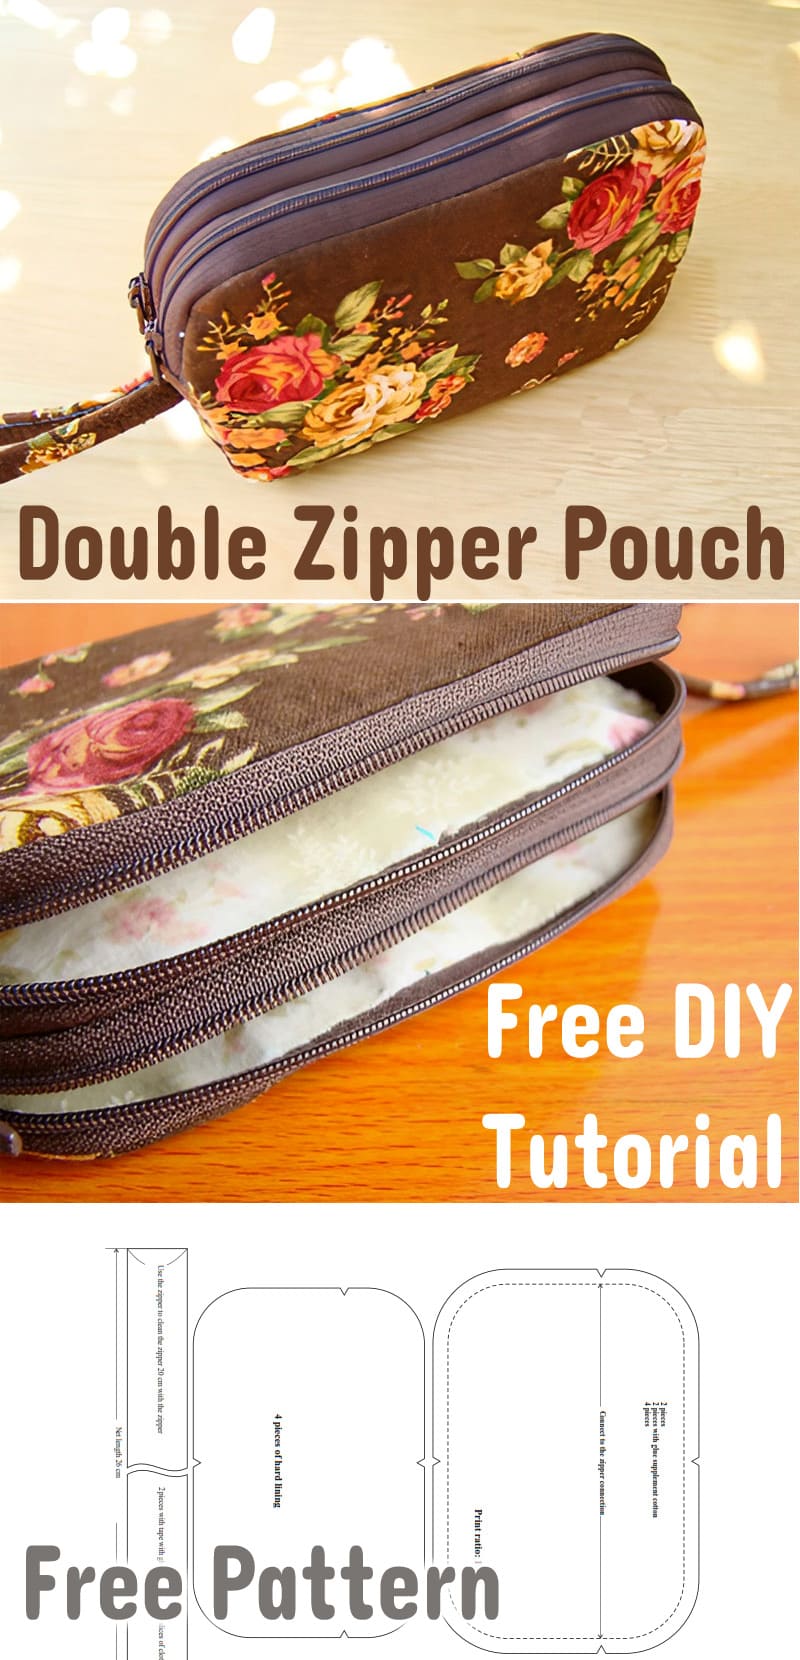 Double Zipper Pouch Tutorial & Pattern